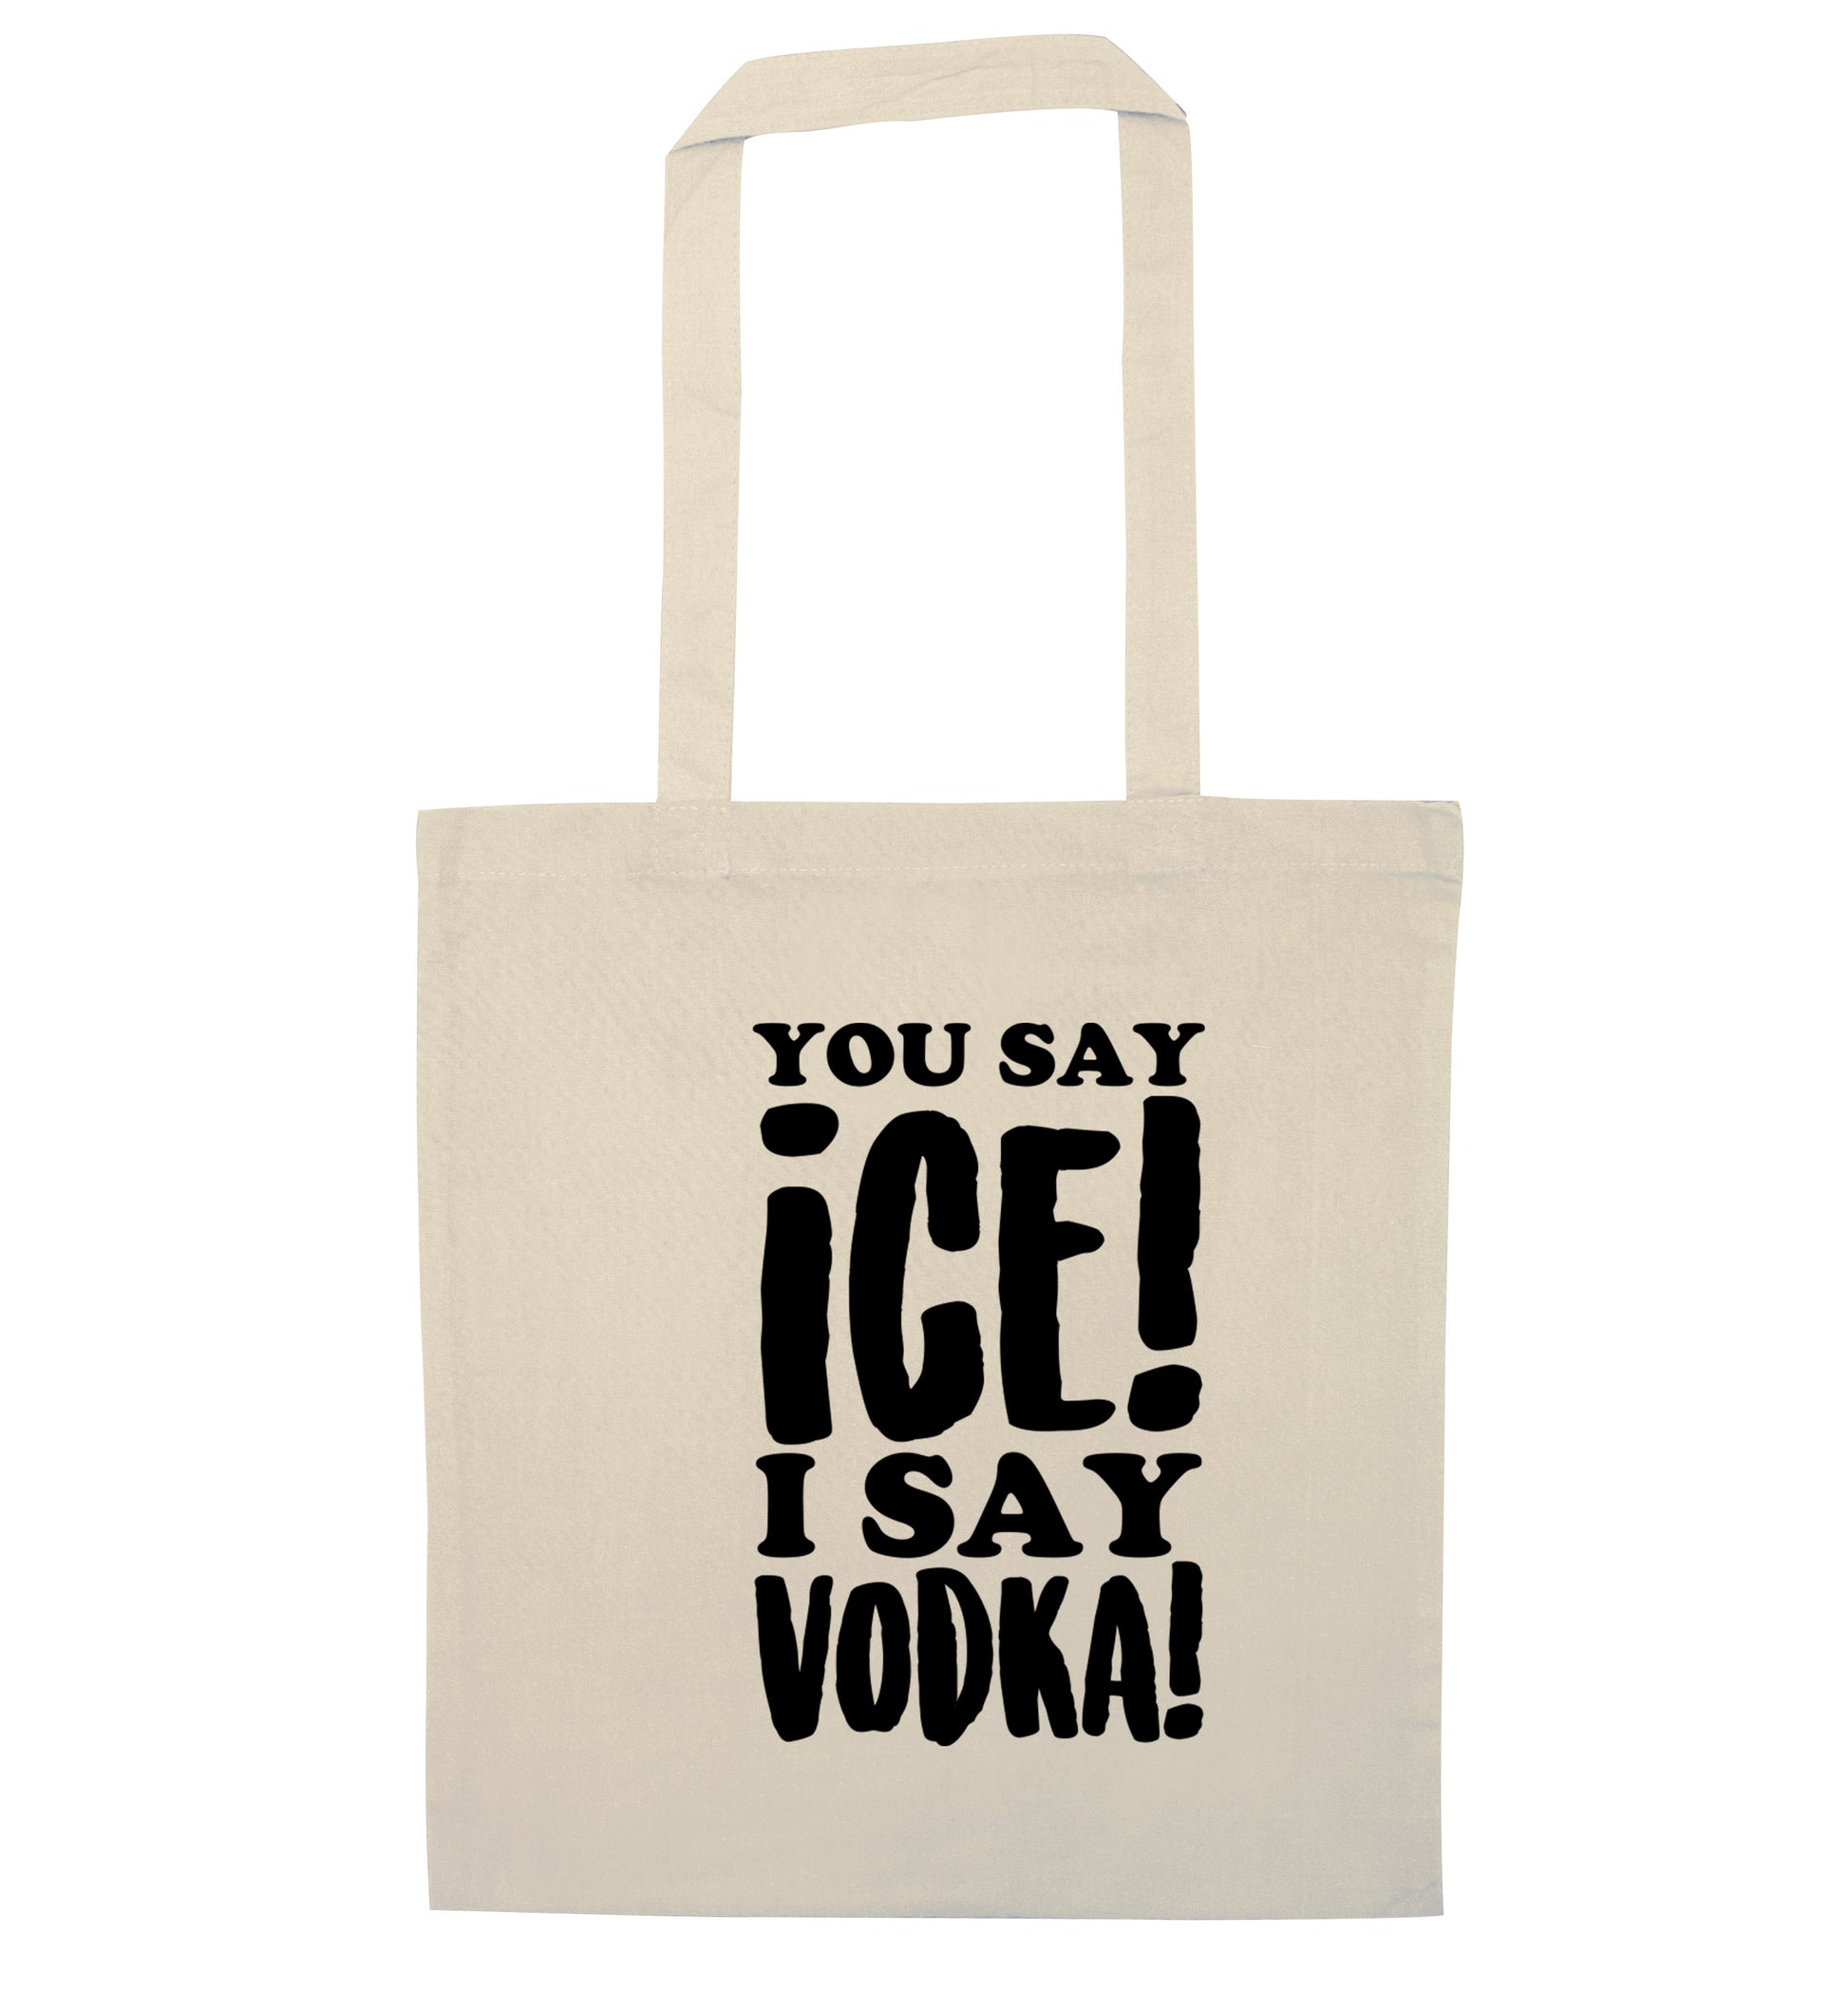 You say ice I say vodka! natural tote bag